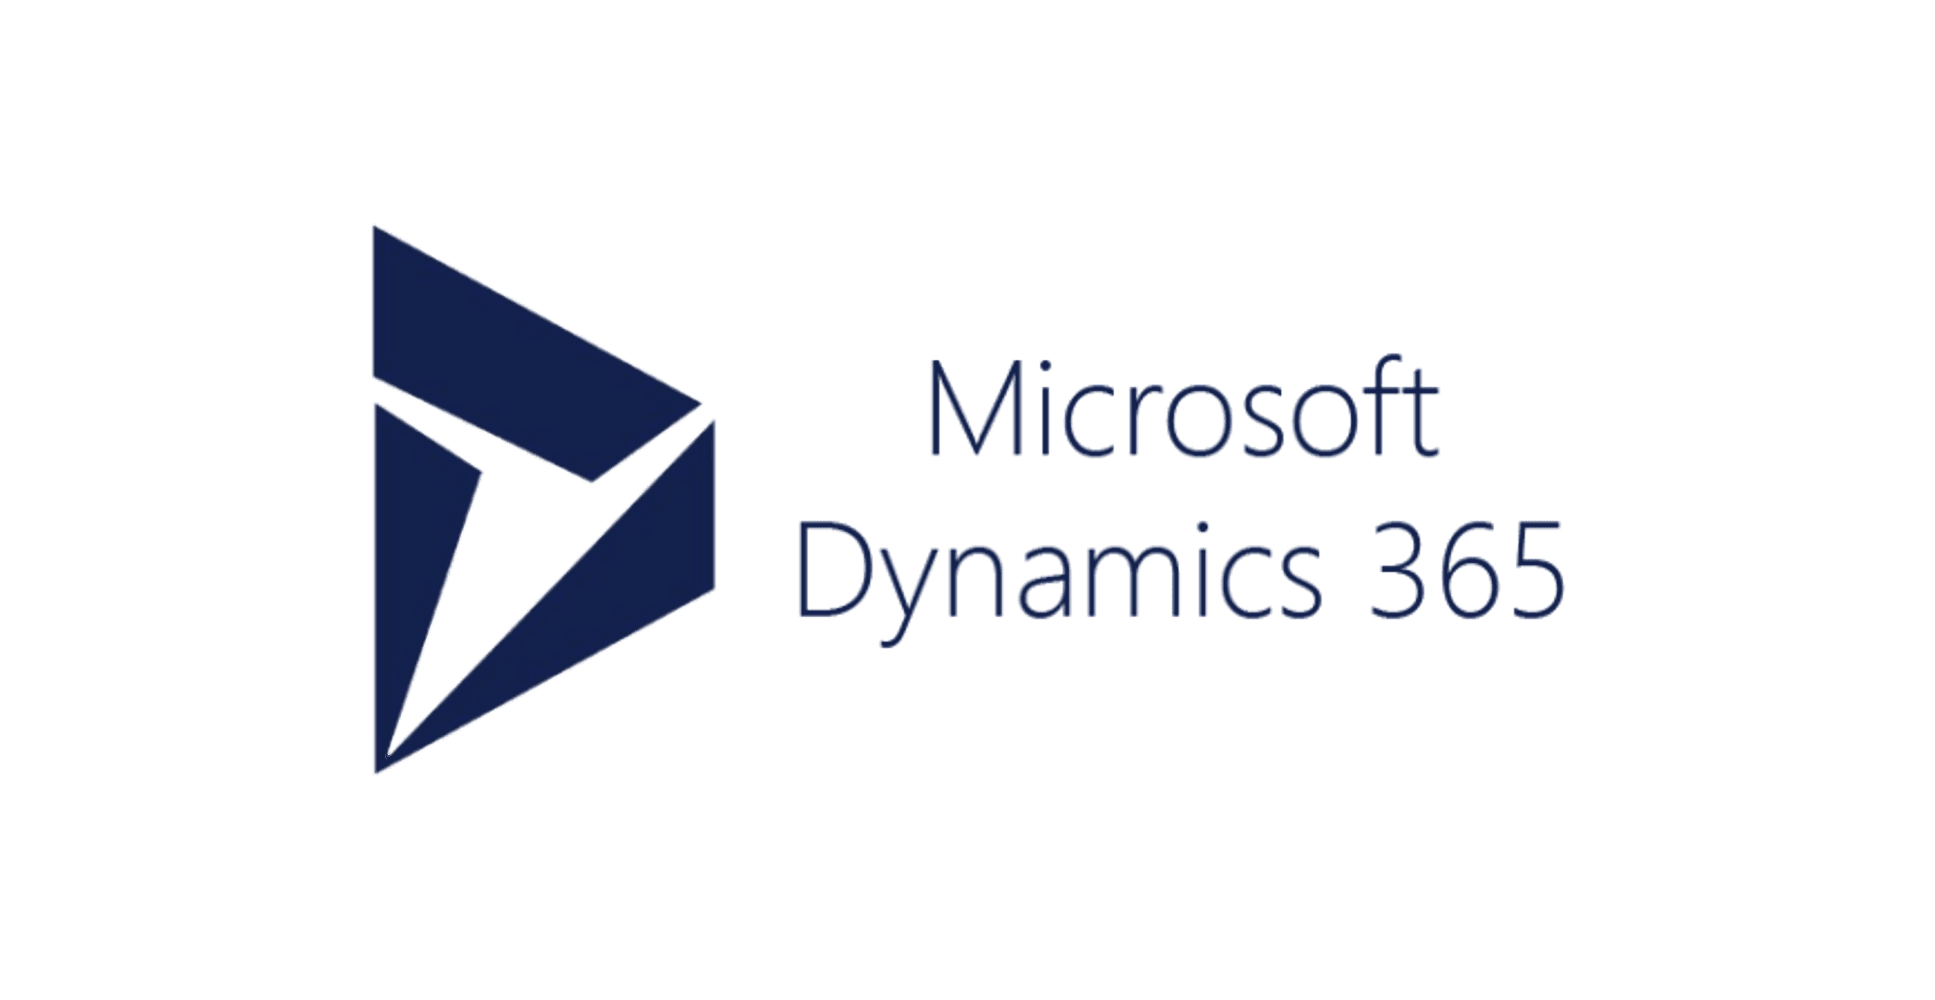 Ms dynamics. MS Dynamics 365. Microsoft Dynamics 365. Microsoft Dynamics 365 лого. Microsoft Dynamics CRM.